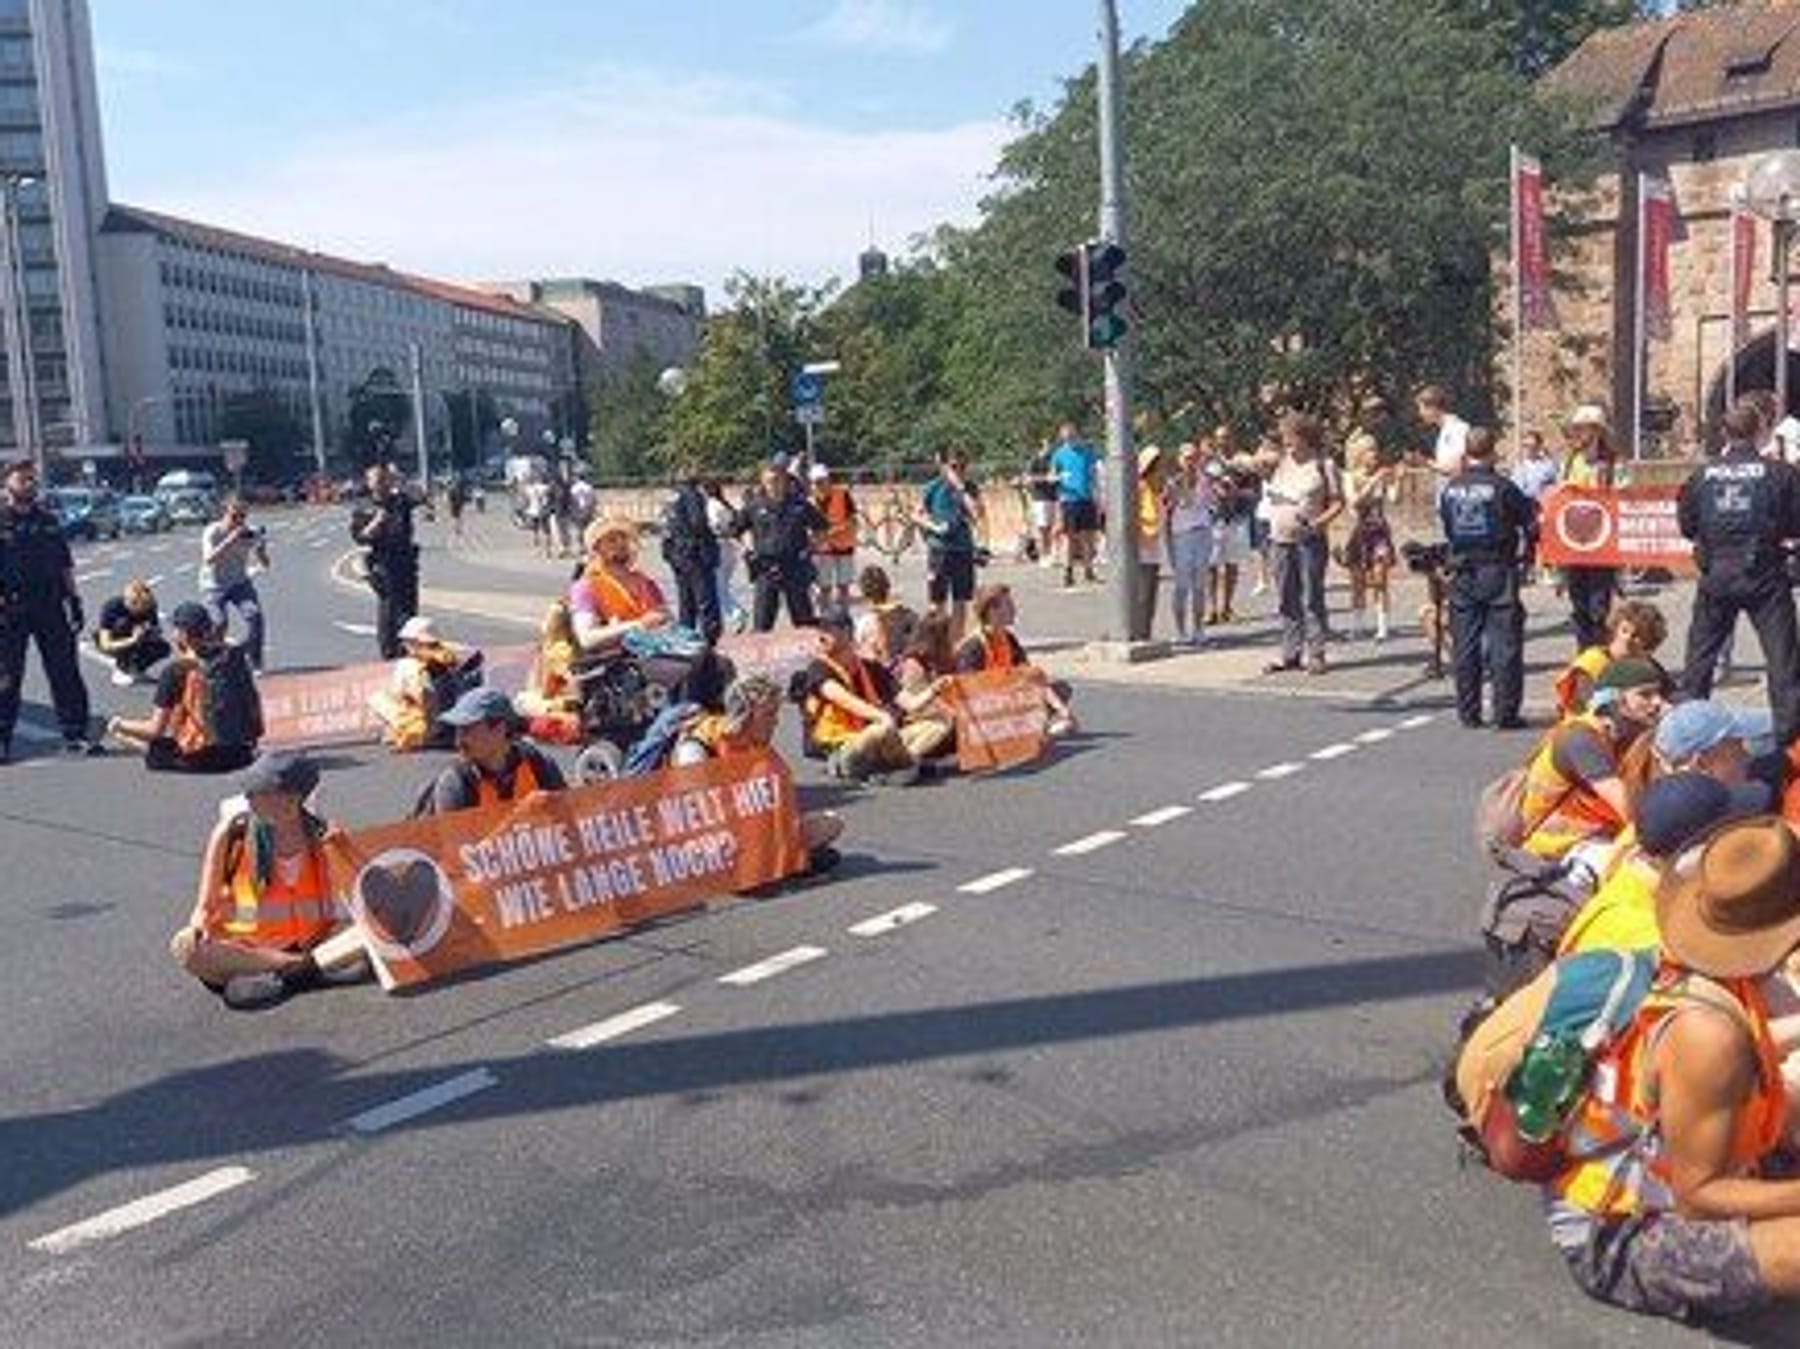 Letzte Generation blockiert Straßen in Nürnberg: Welche Strafe droht?